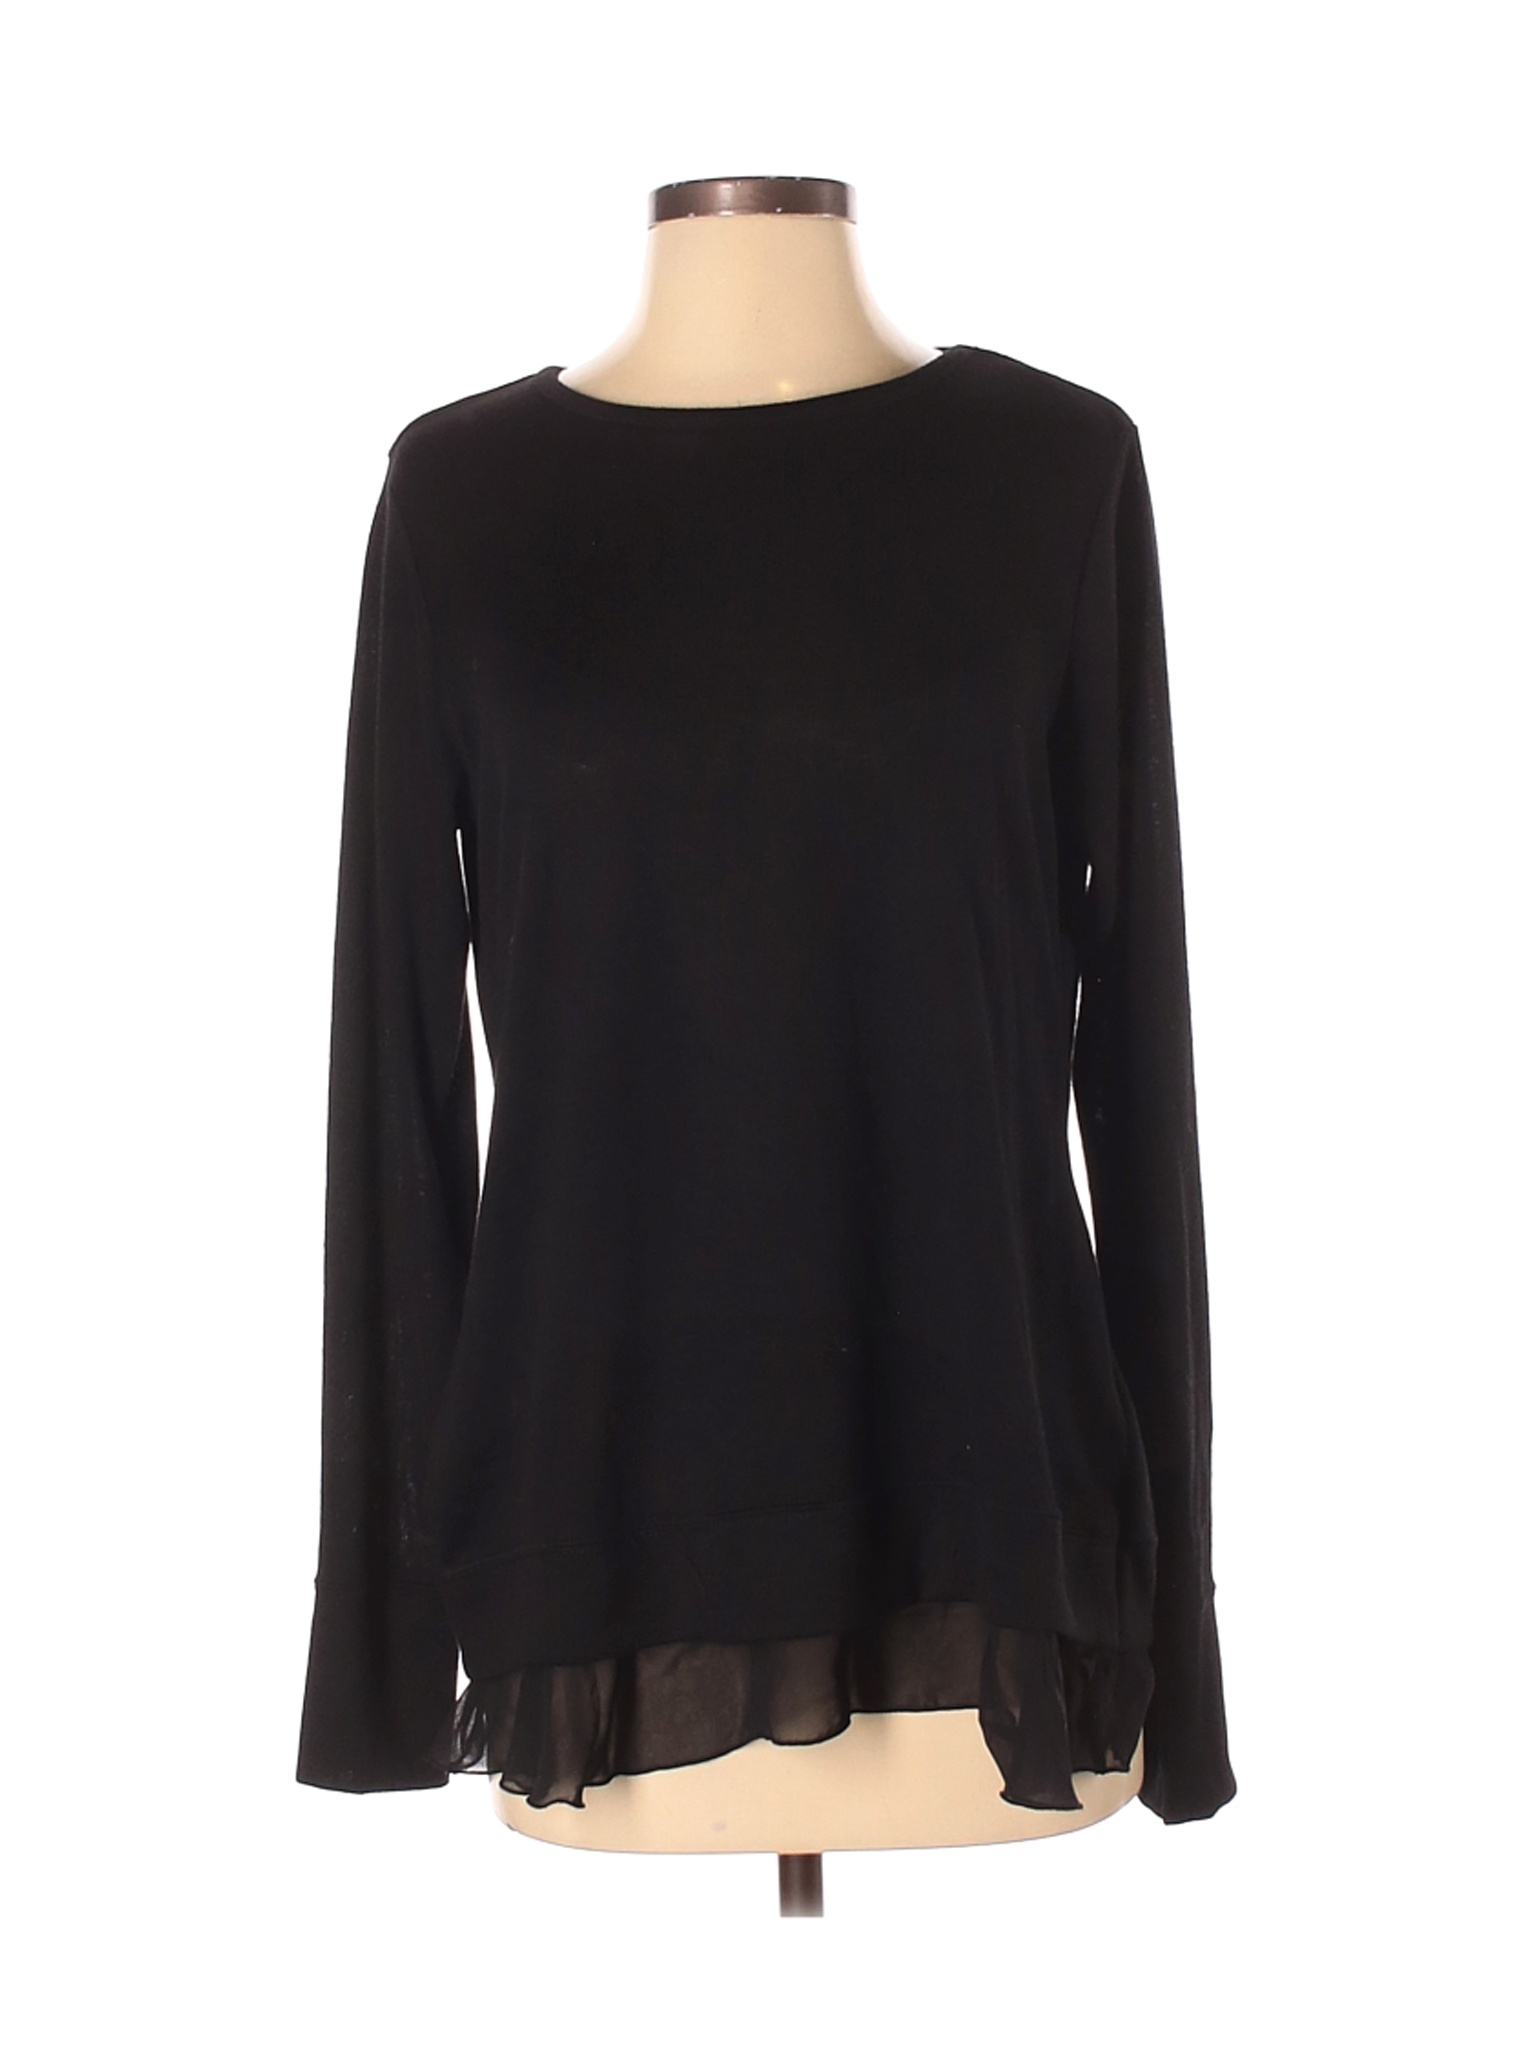 Kelly By Clinton Kelly Women Black Pullover Sweater S | eBay